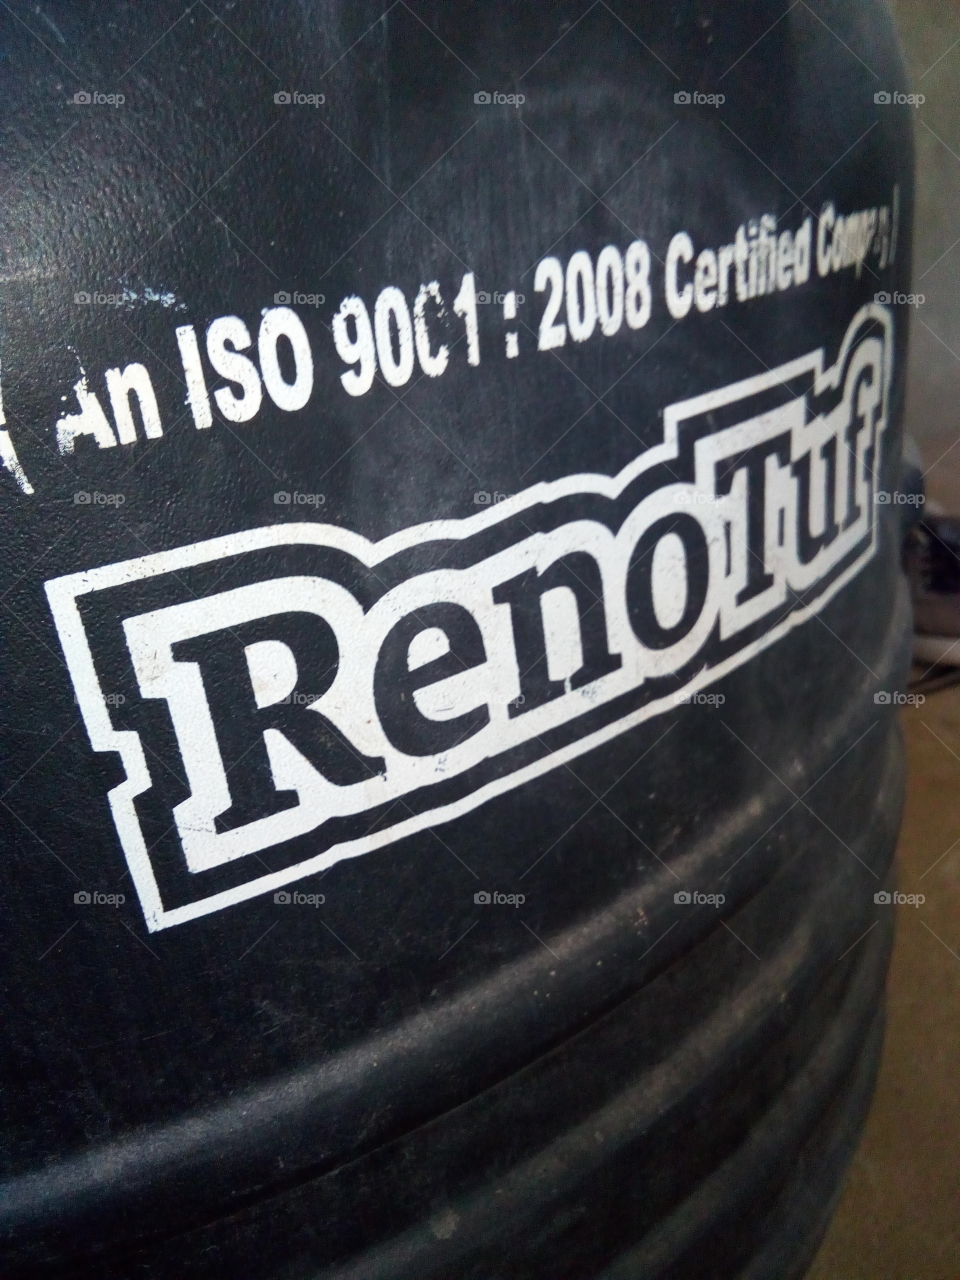 Renotruf water tenk